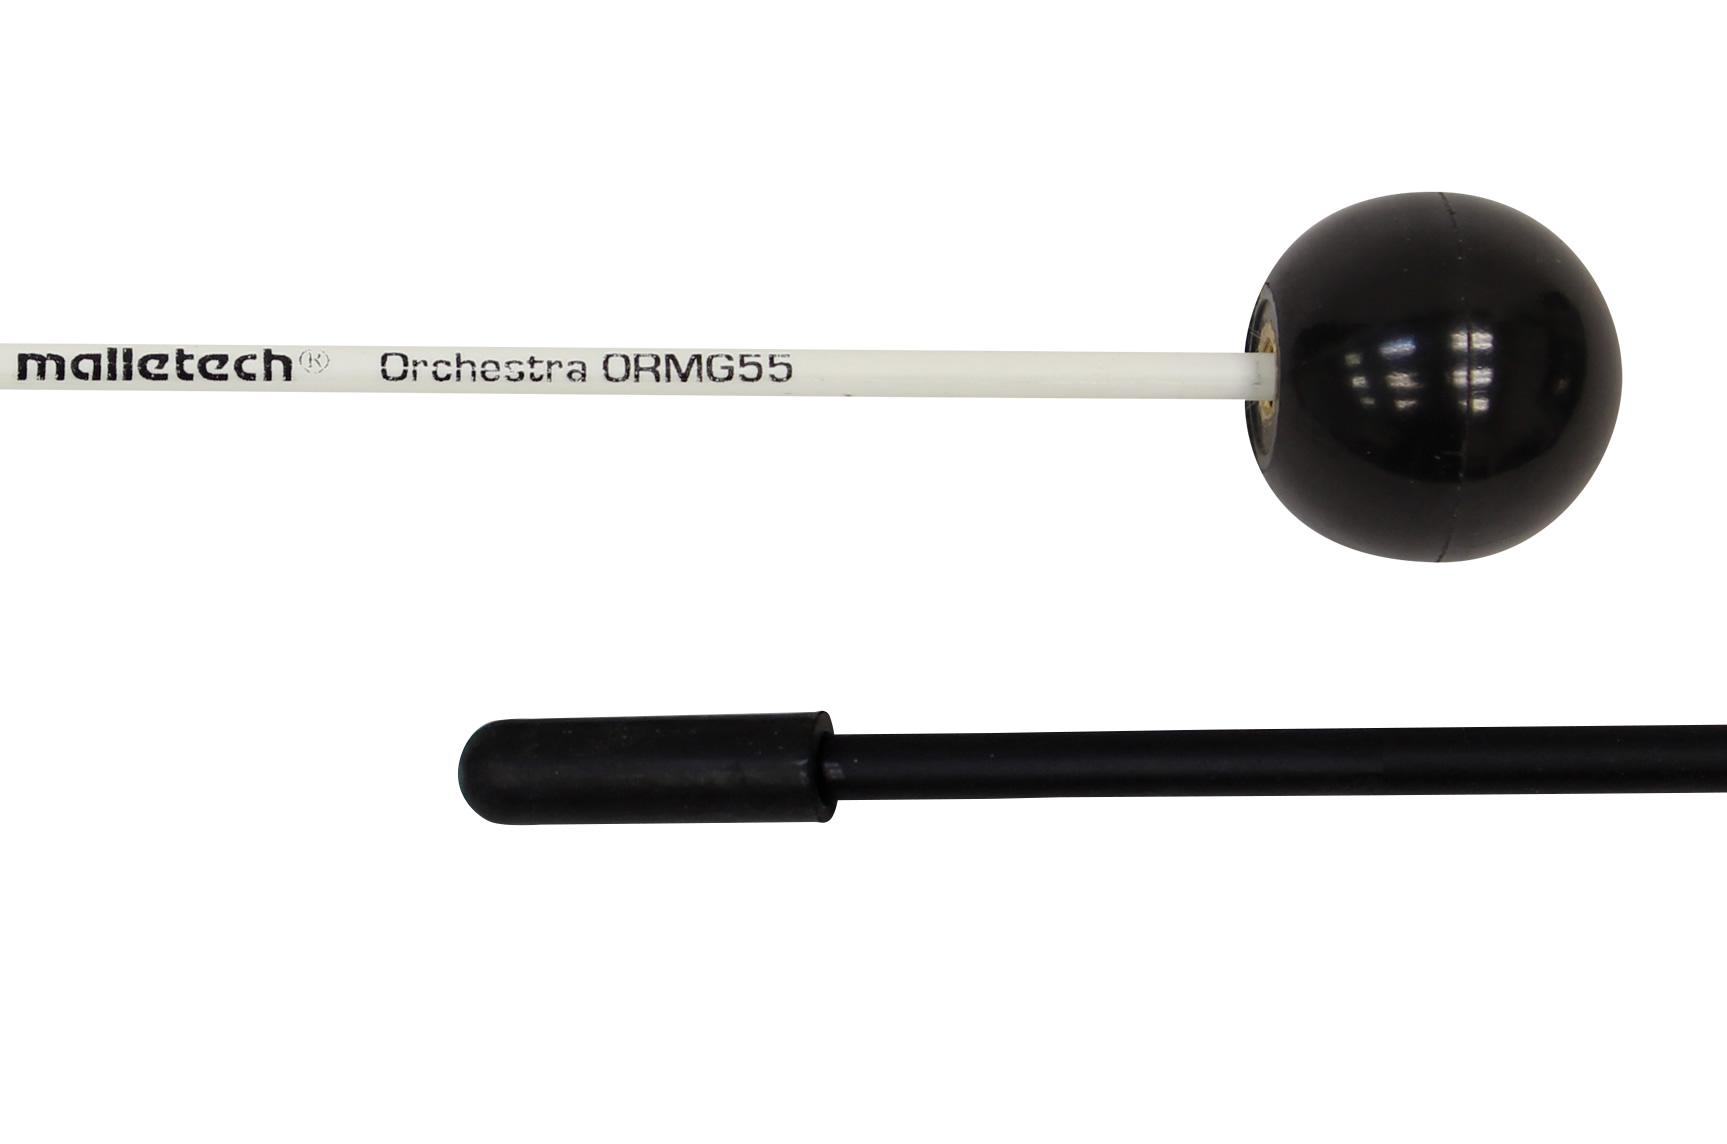 ORMG55 ブラックプラスティックボール／オーケストラ シリーズ グロッケンマレット